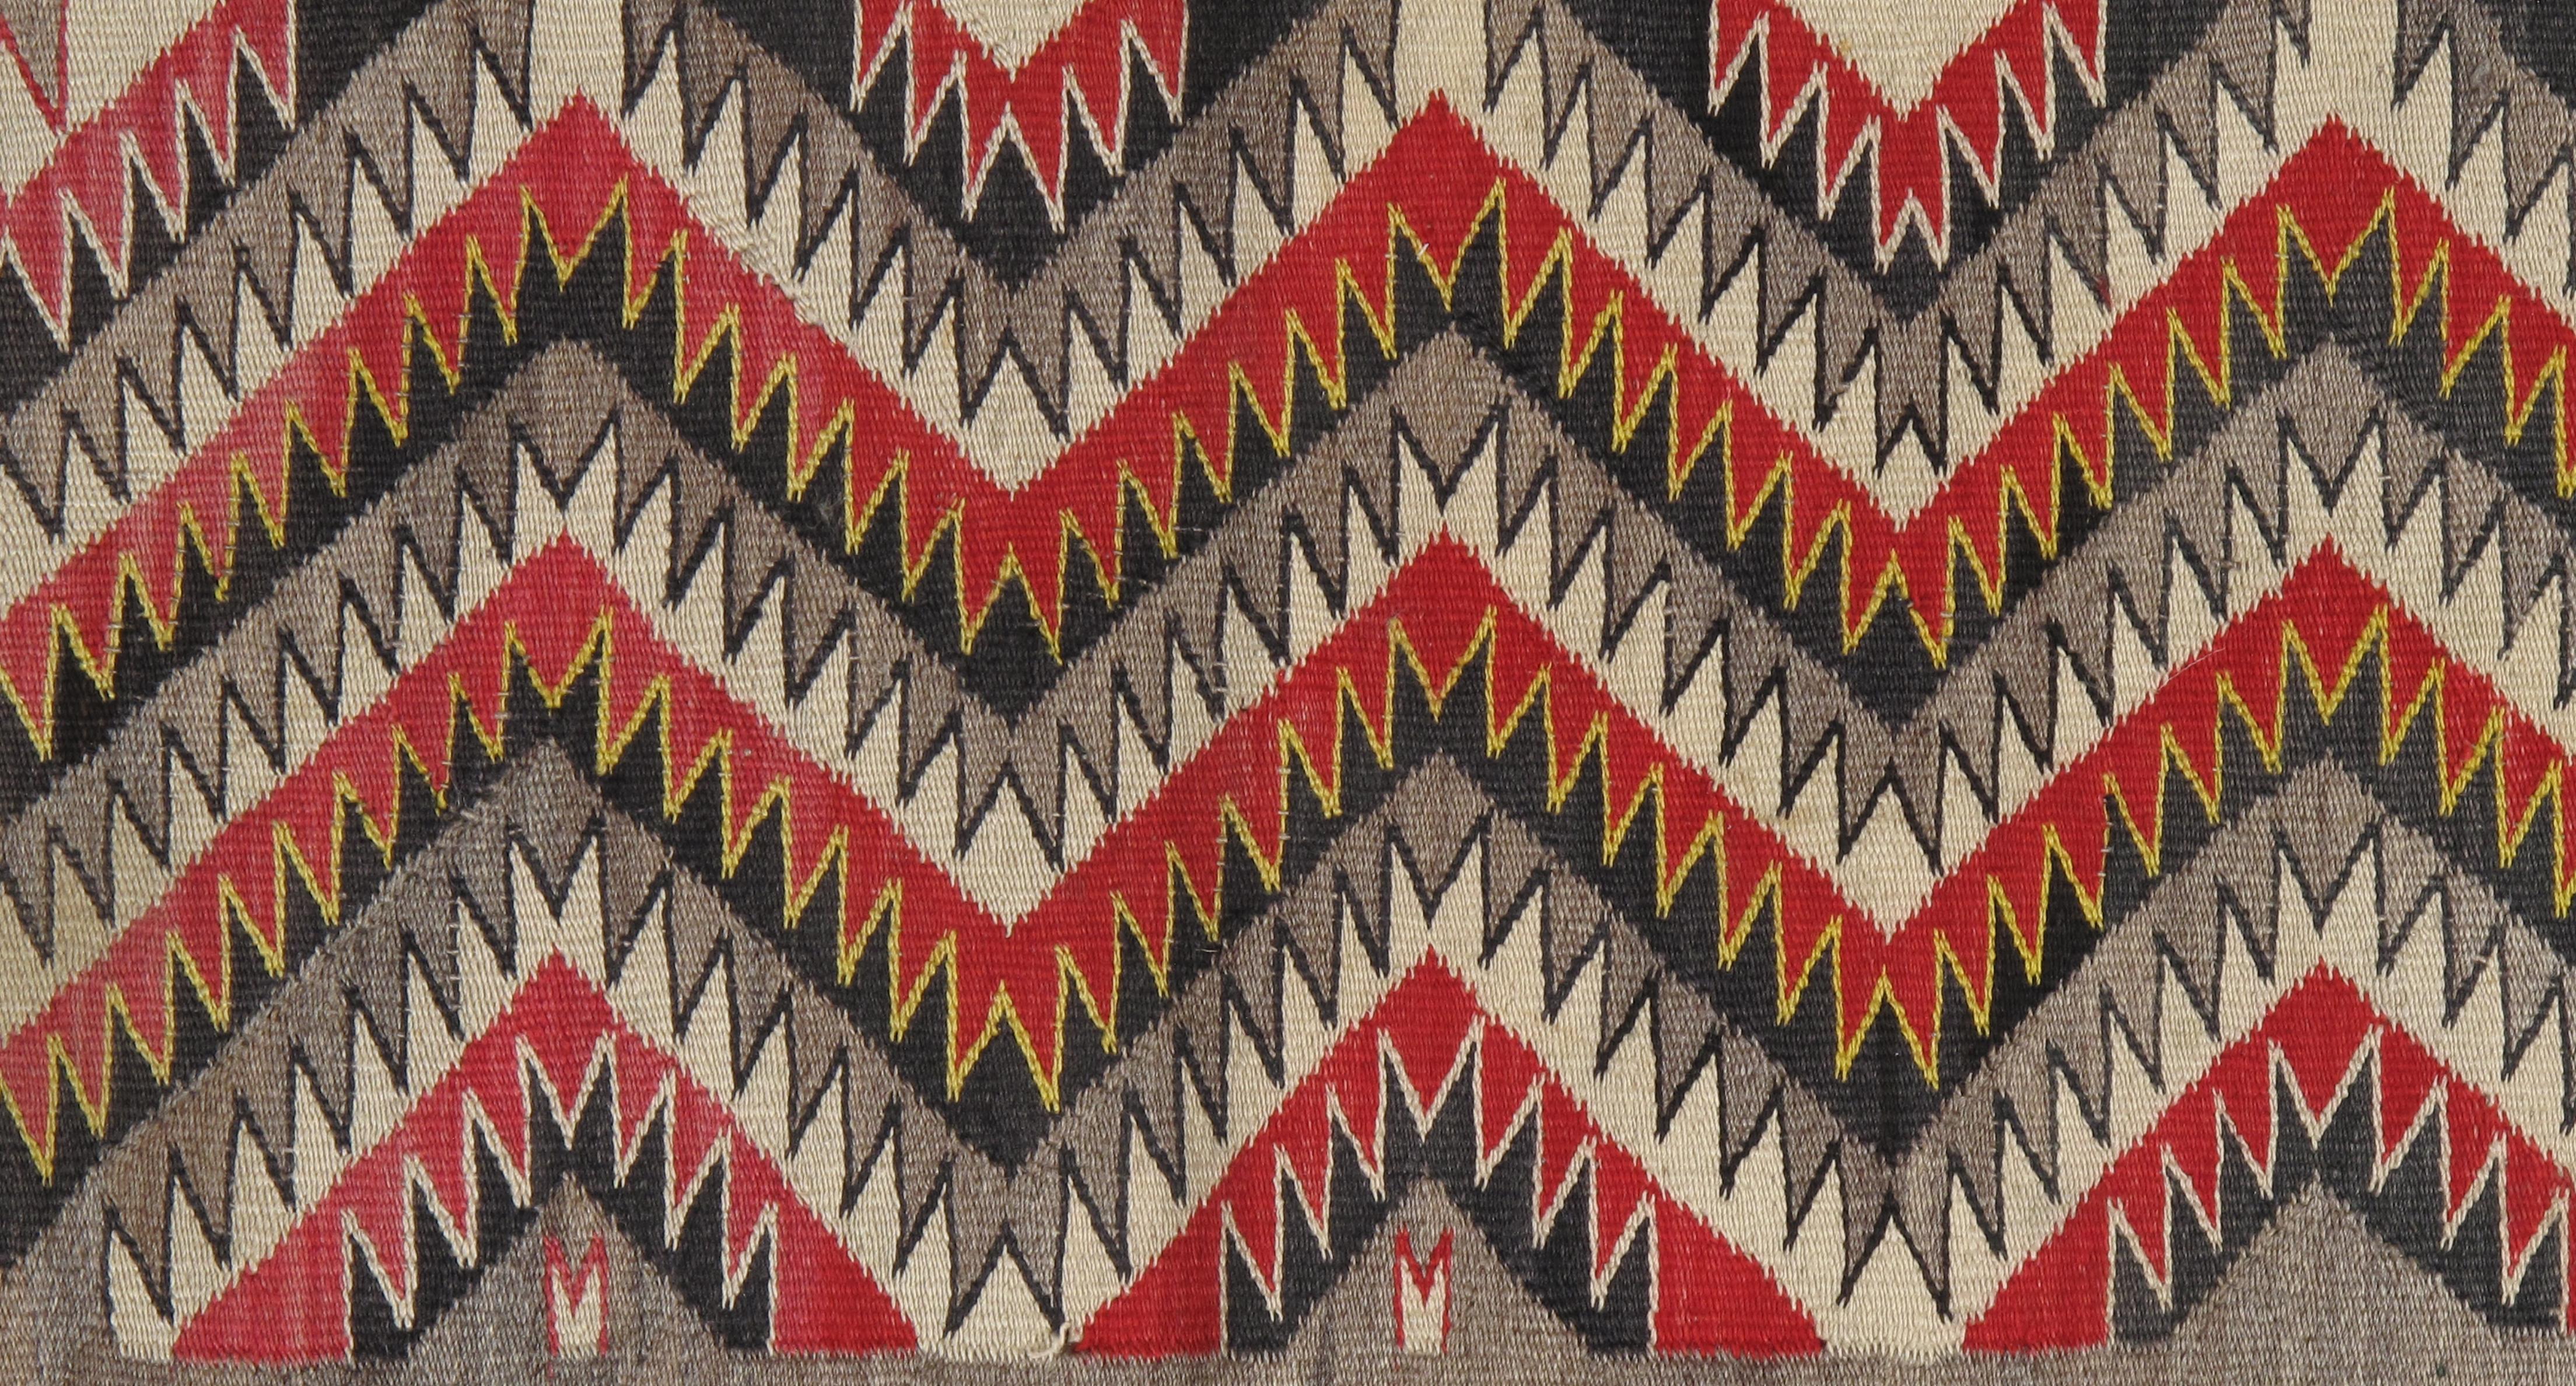 Antique Navajo Rug, Handmade Wool Oriental Rug, Red, Beige and Brown 7